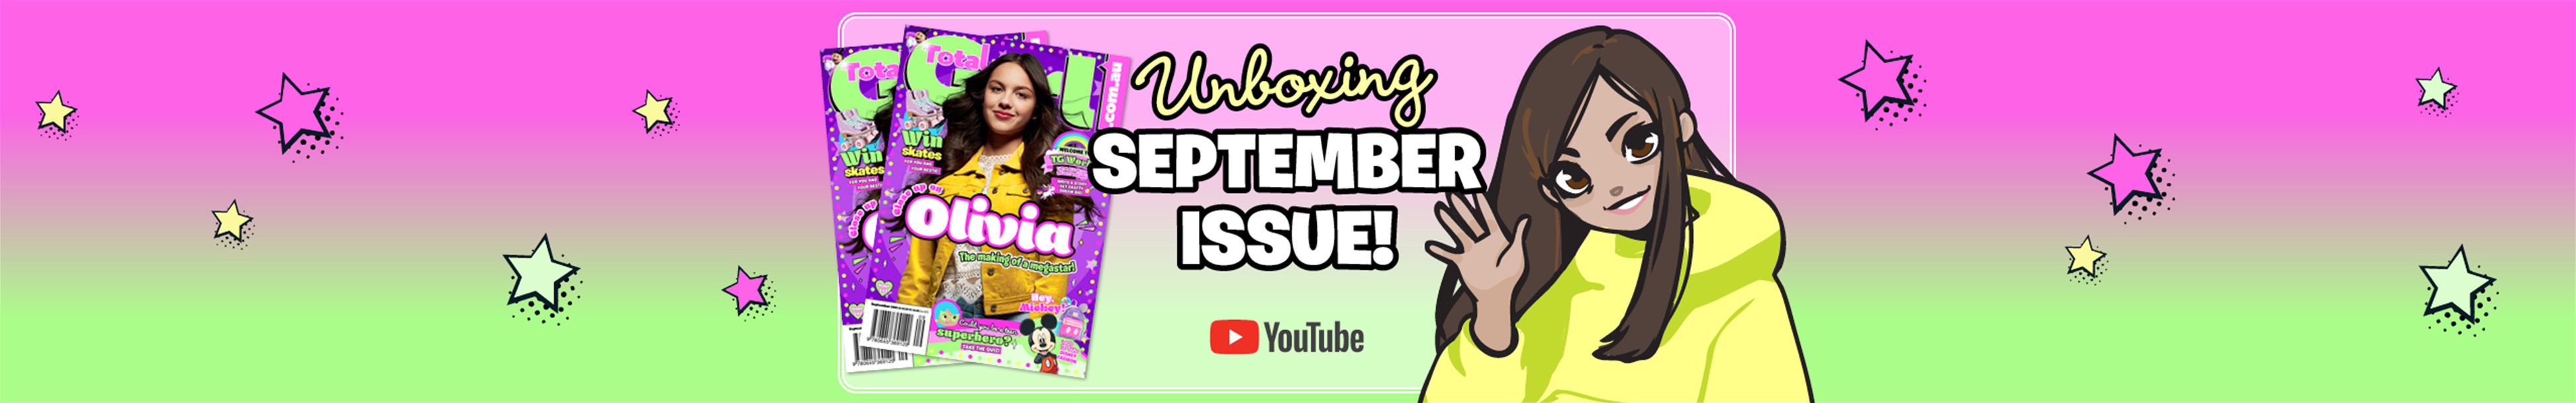 Mag sneak peek: Unboxing TG's September Issue!